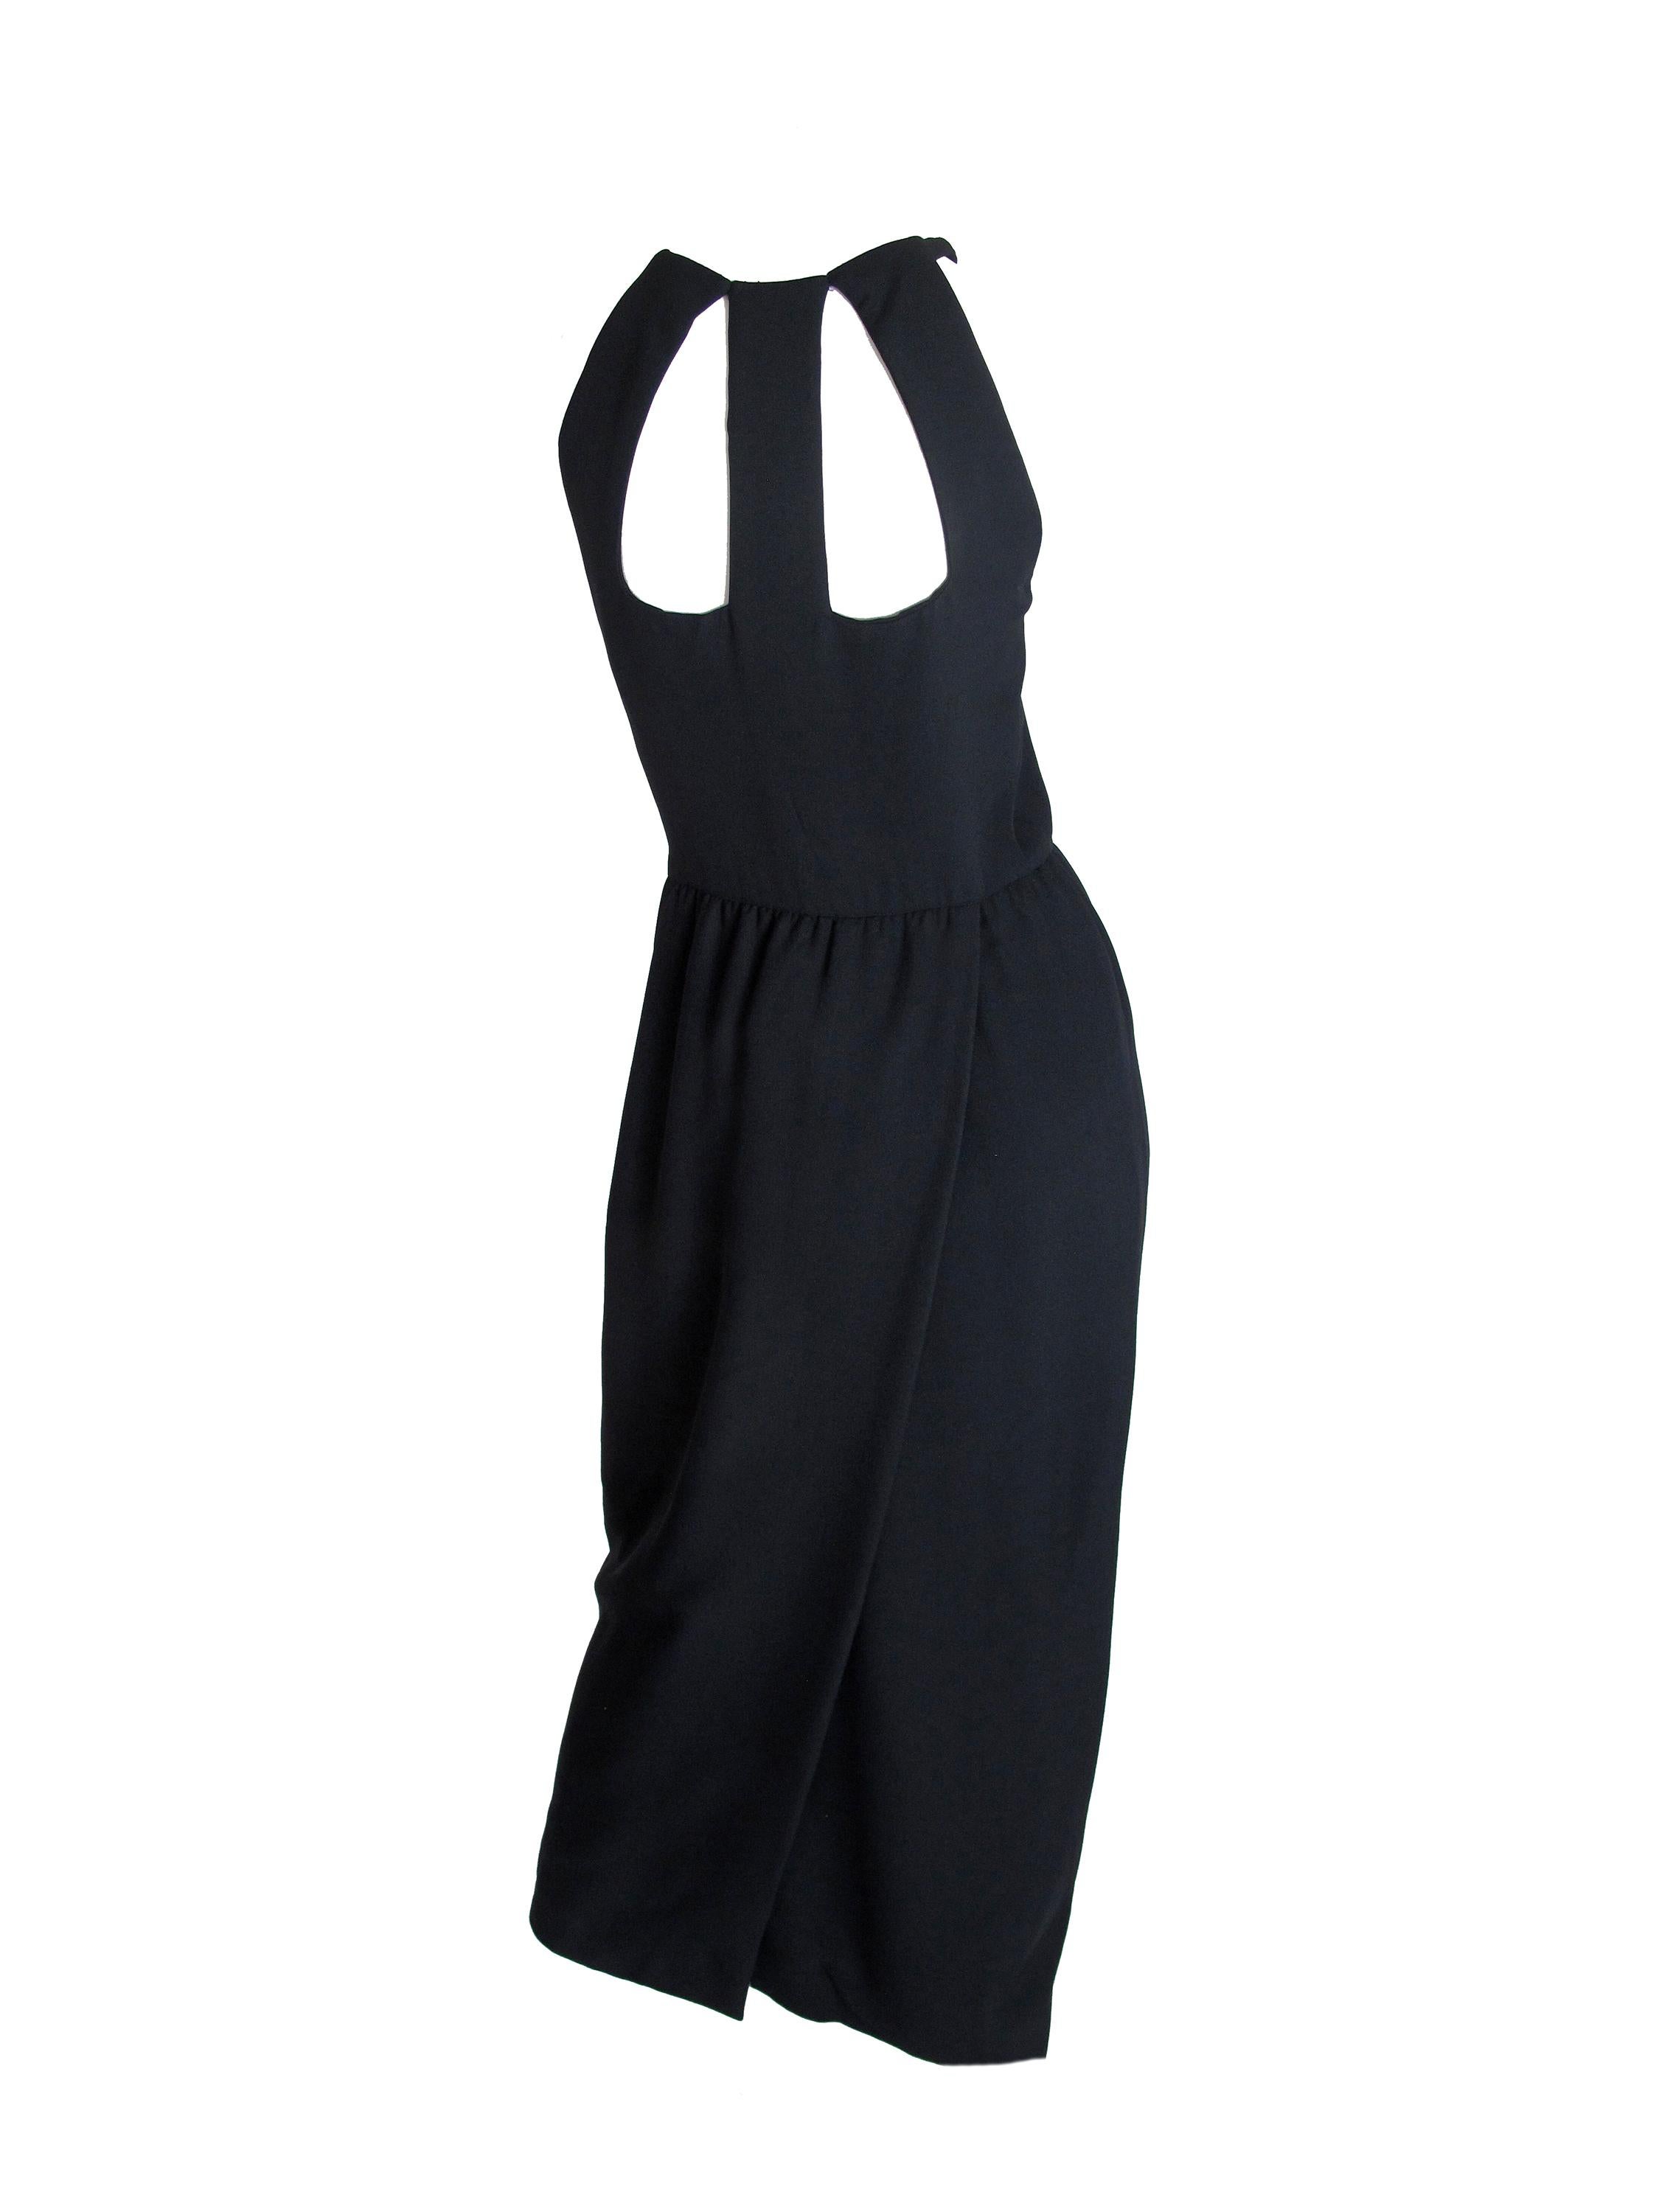 1990s Oscar de la Renta black evening dress with cut outs. Condition: Excellent. Size 6- 8